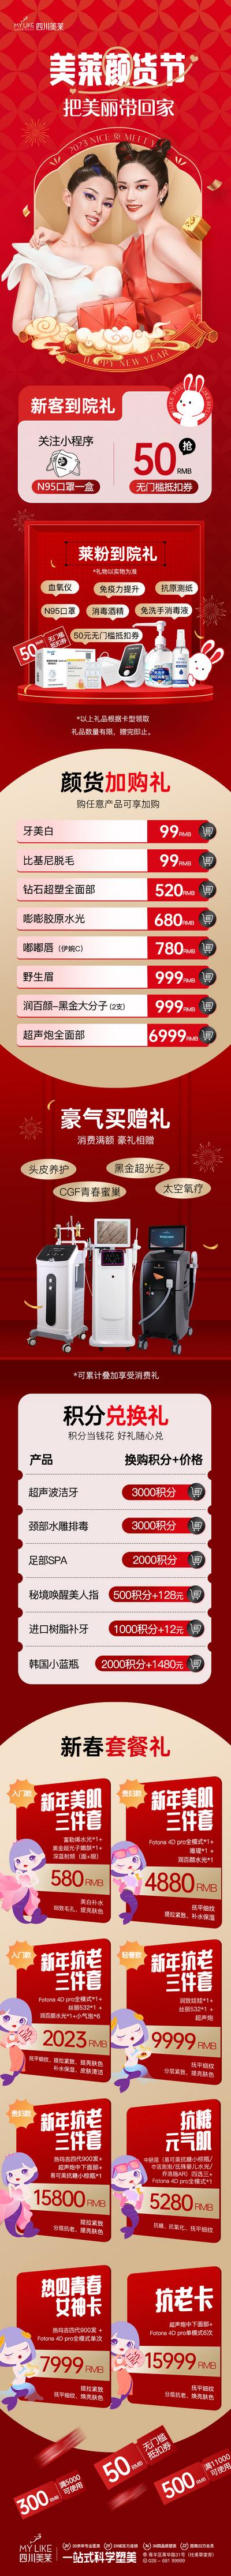 南门网 专题设计 长图 医美 整形 美容 新年 年货节 促销 套餐 卡项 活动 仪器 人物